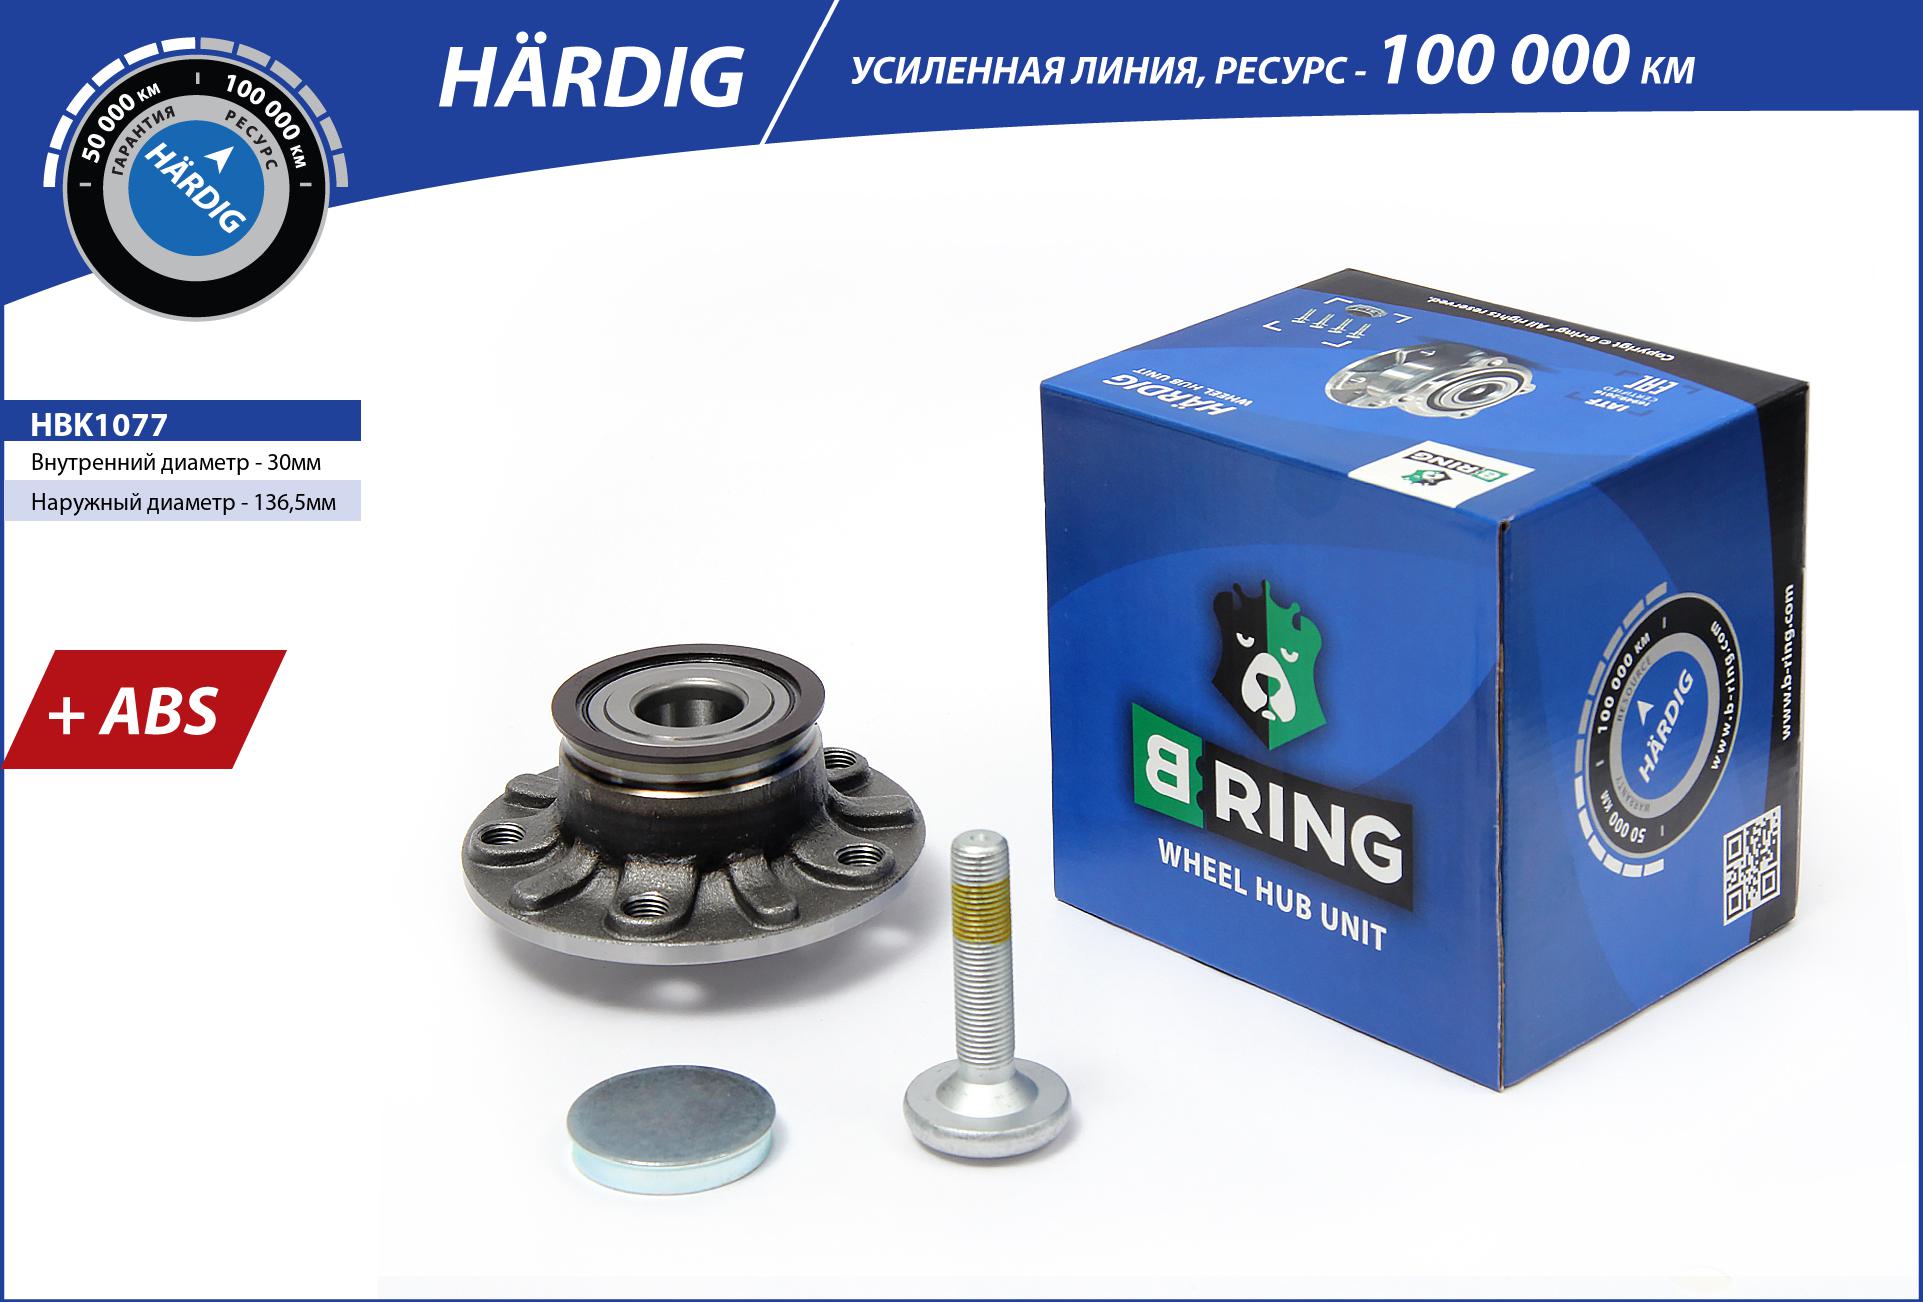 B-RING HBK1077